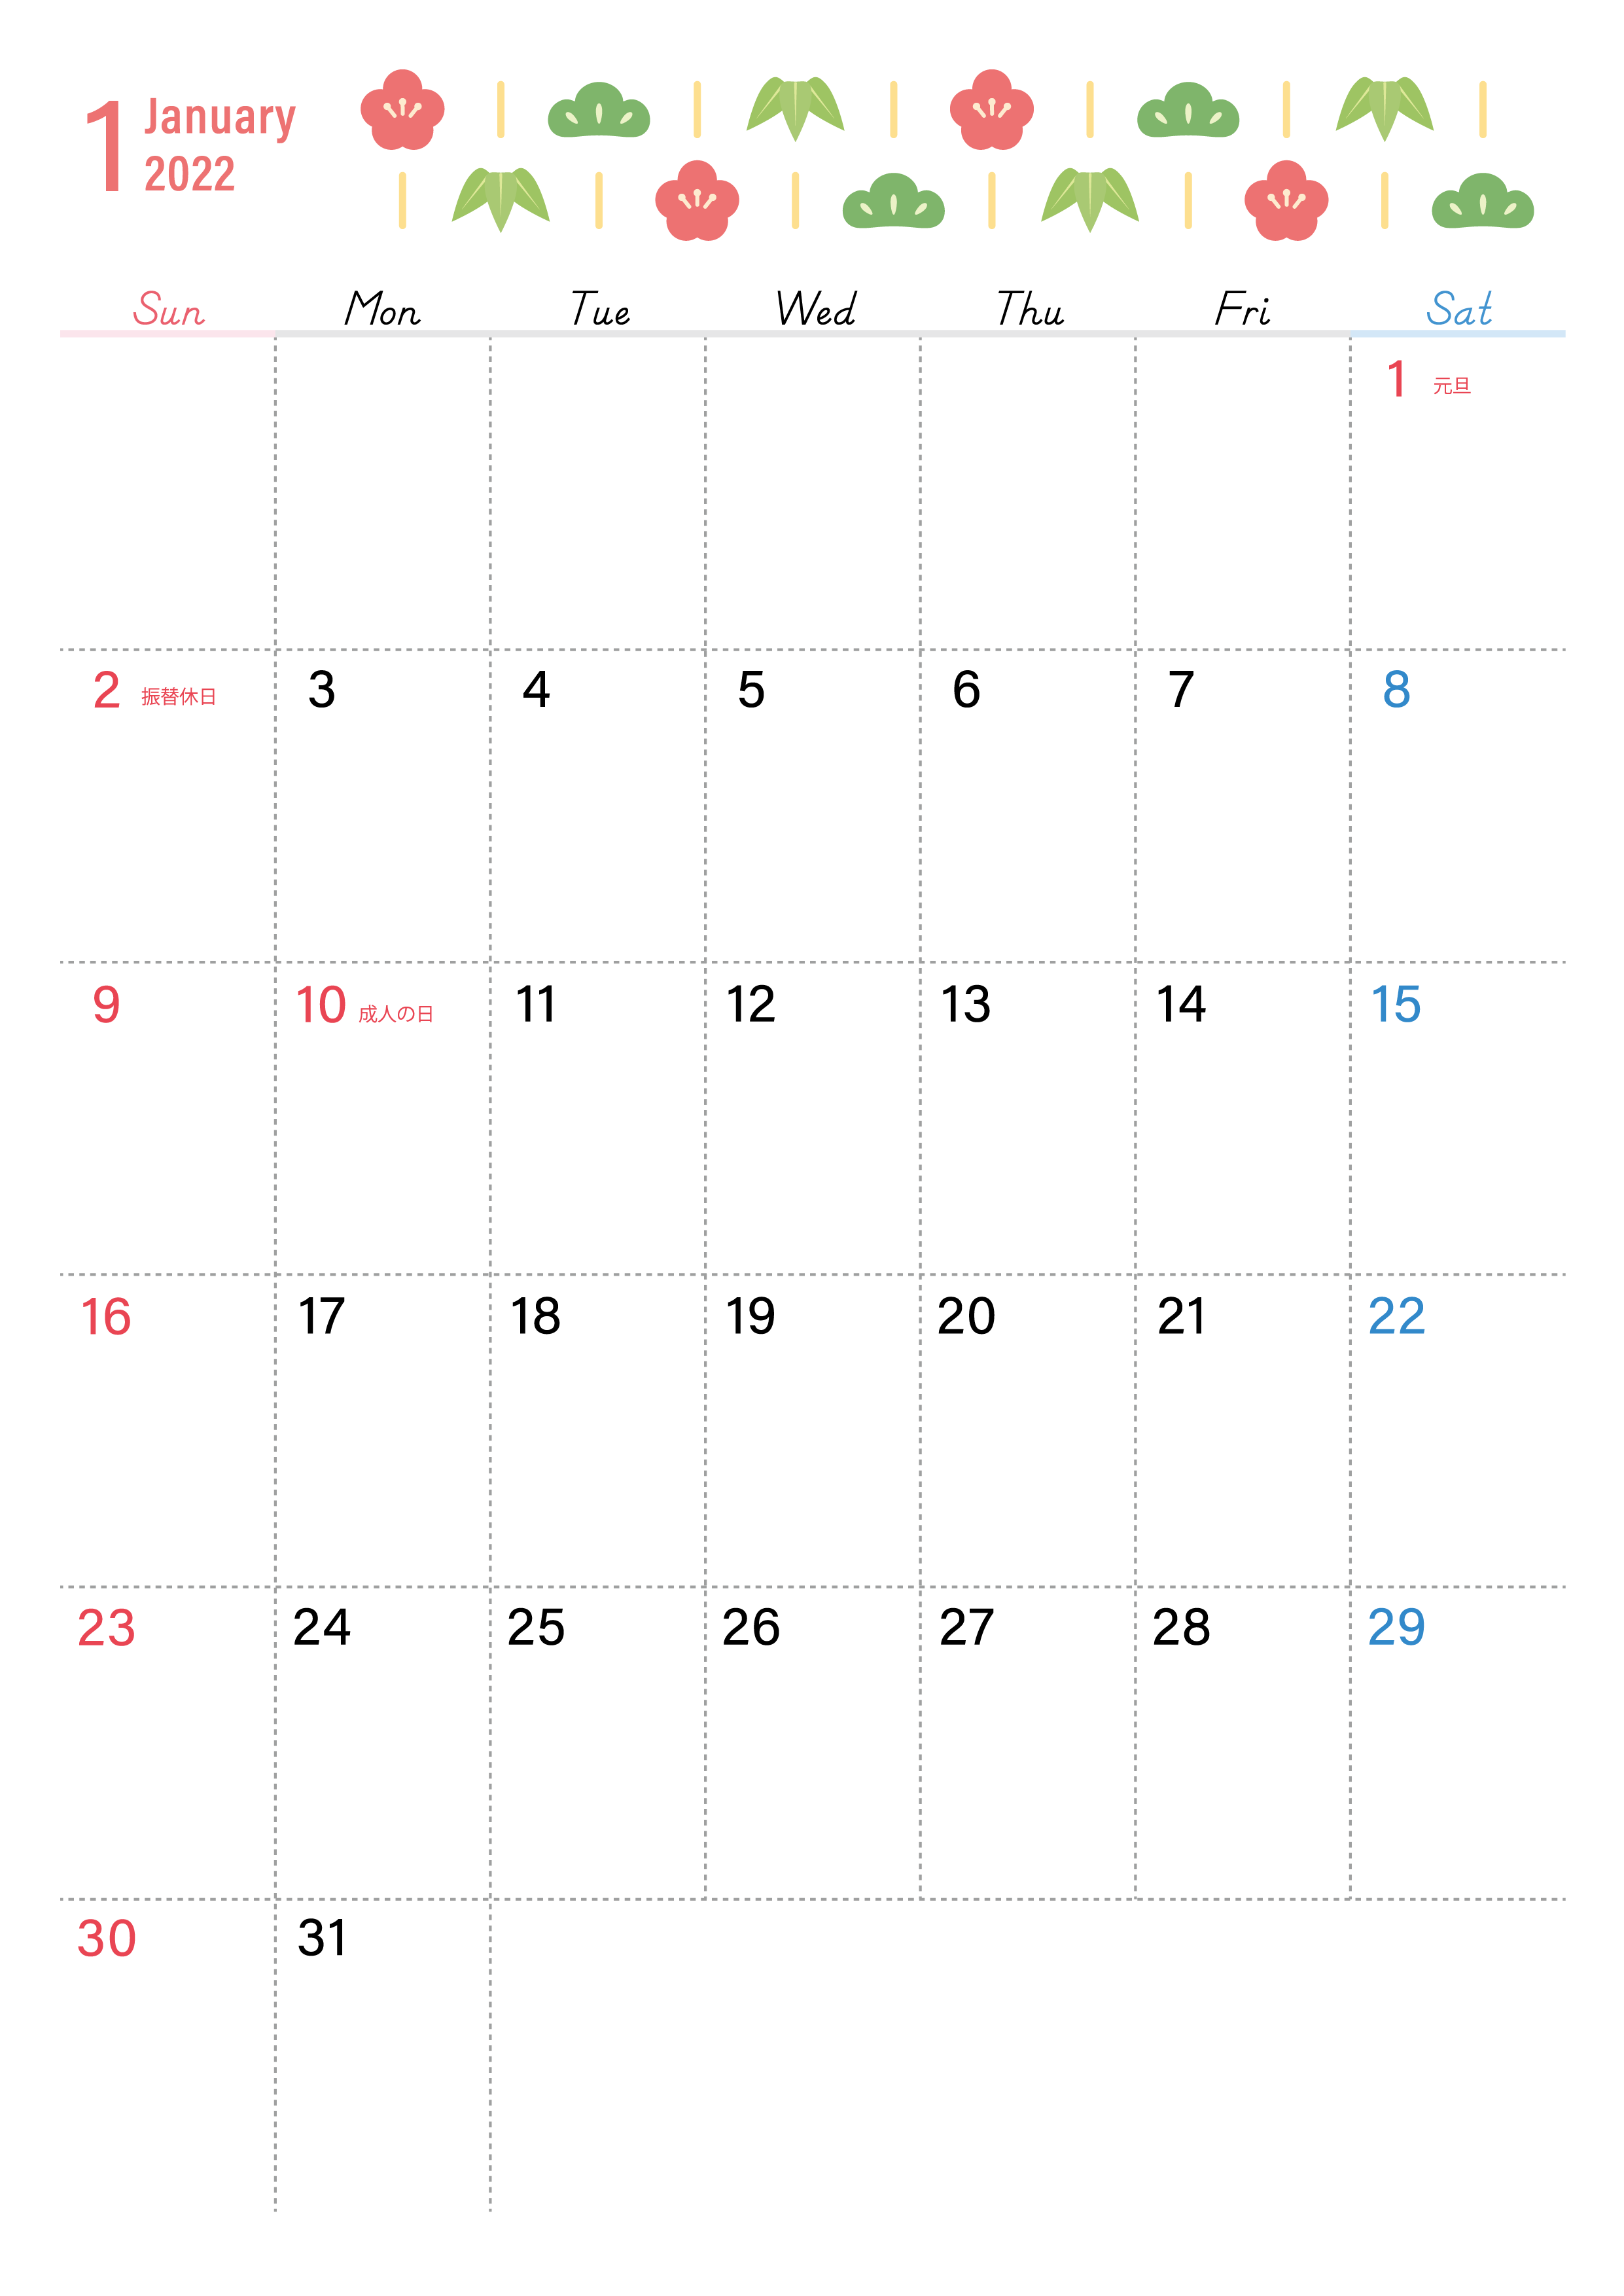 かわいい松竹梅デザインの22年1月カレンダー サイズ はダウンロードが無料 素材デザイン王